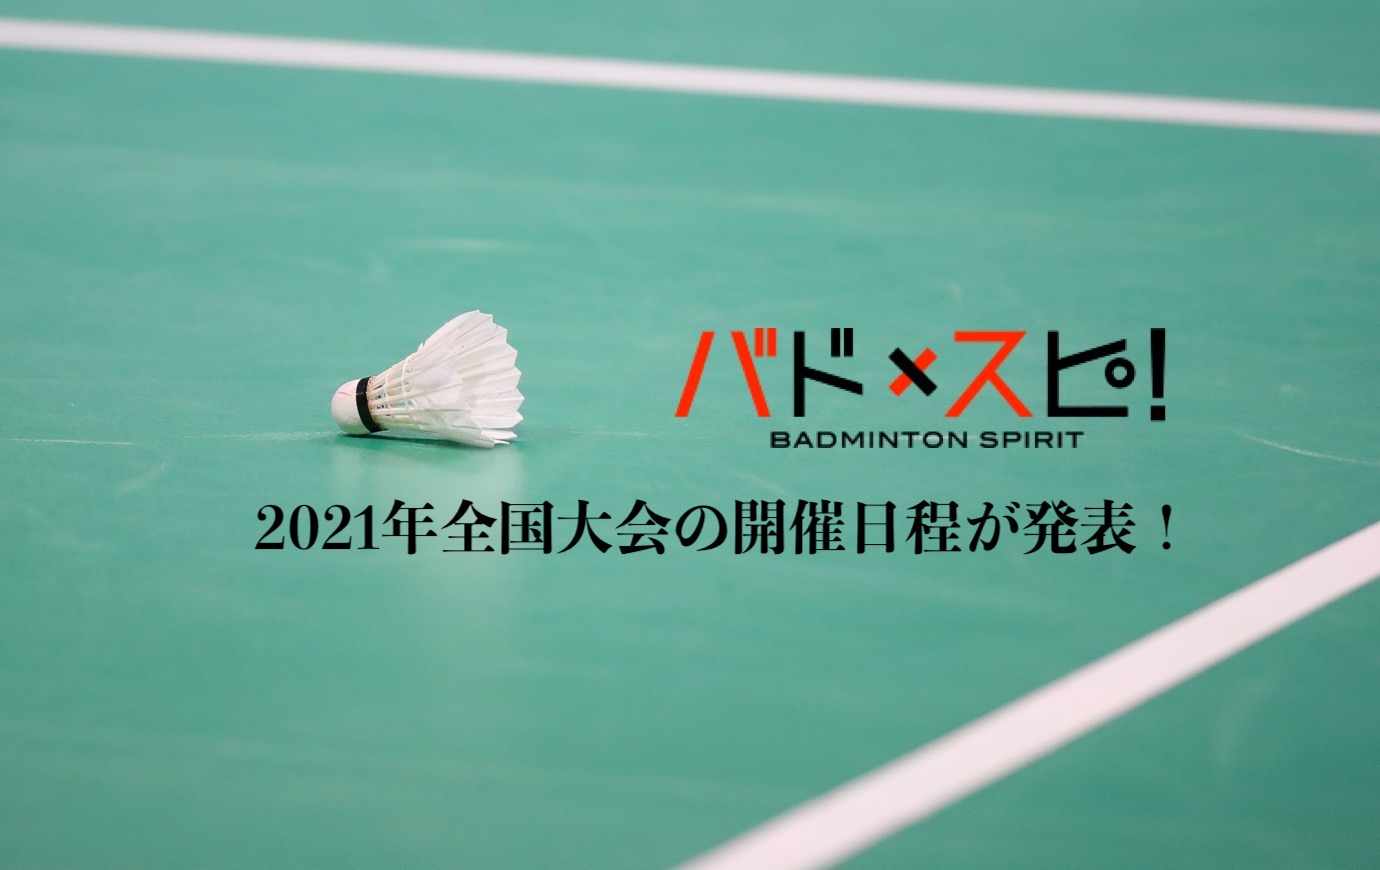 大会情報 更新 2021年国内主要大会の開催日程が発表 バドスピ Badminton Spirit